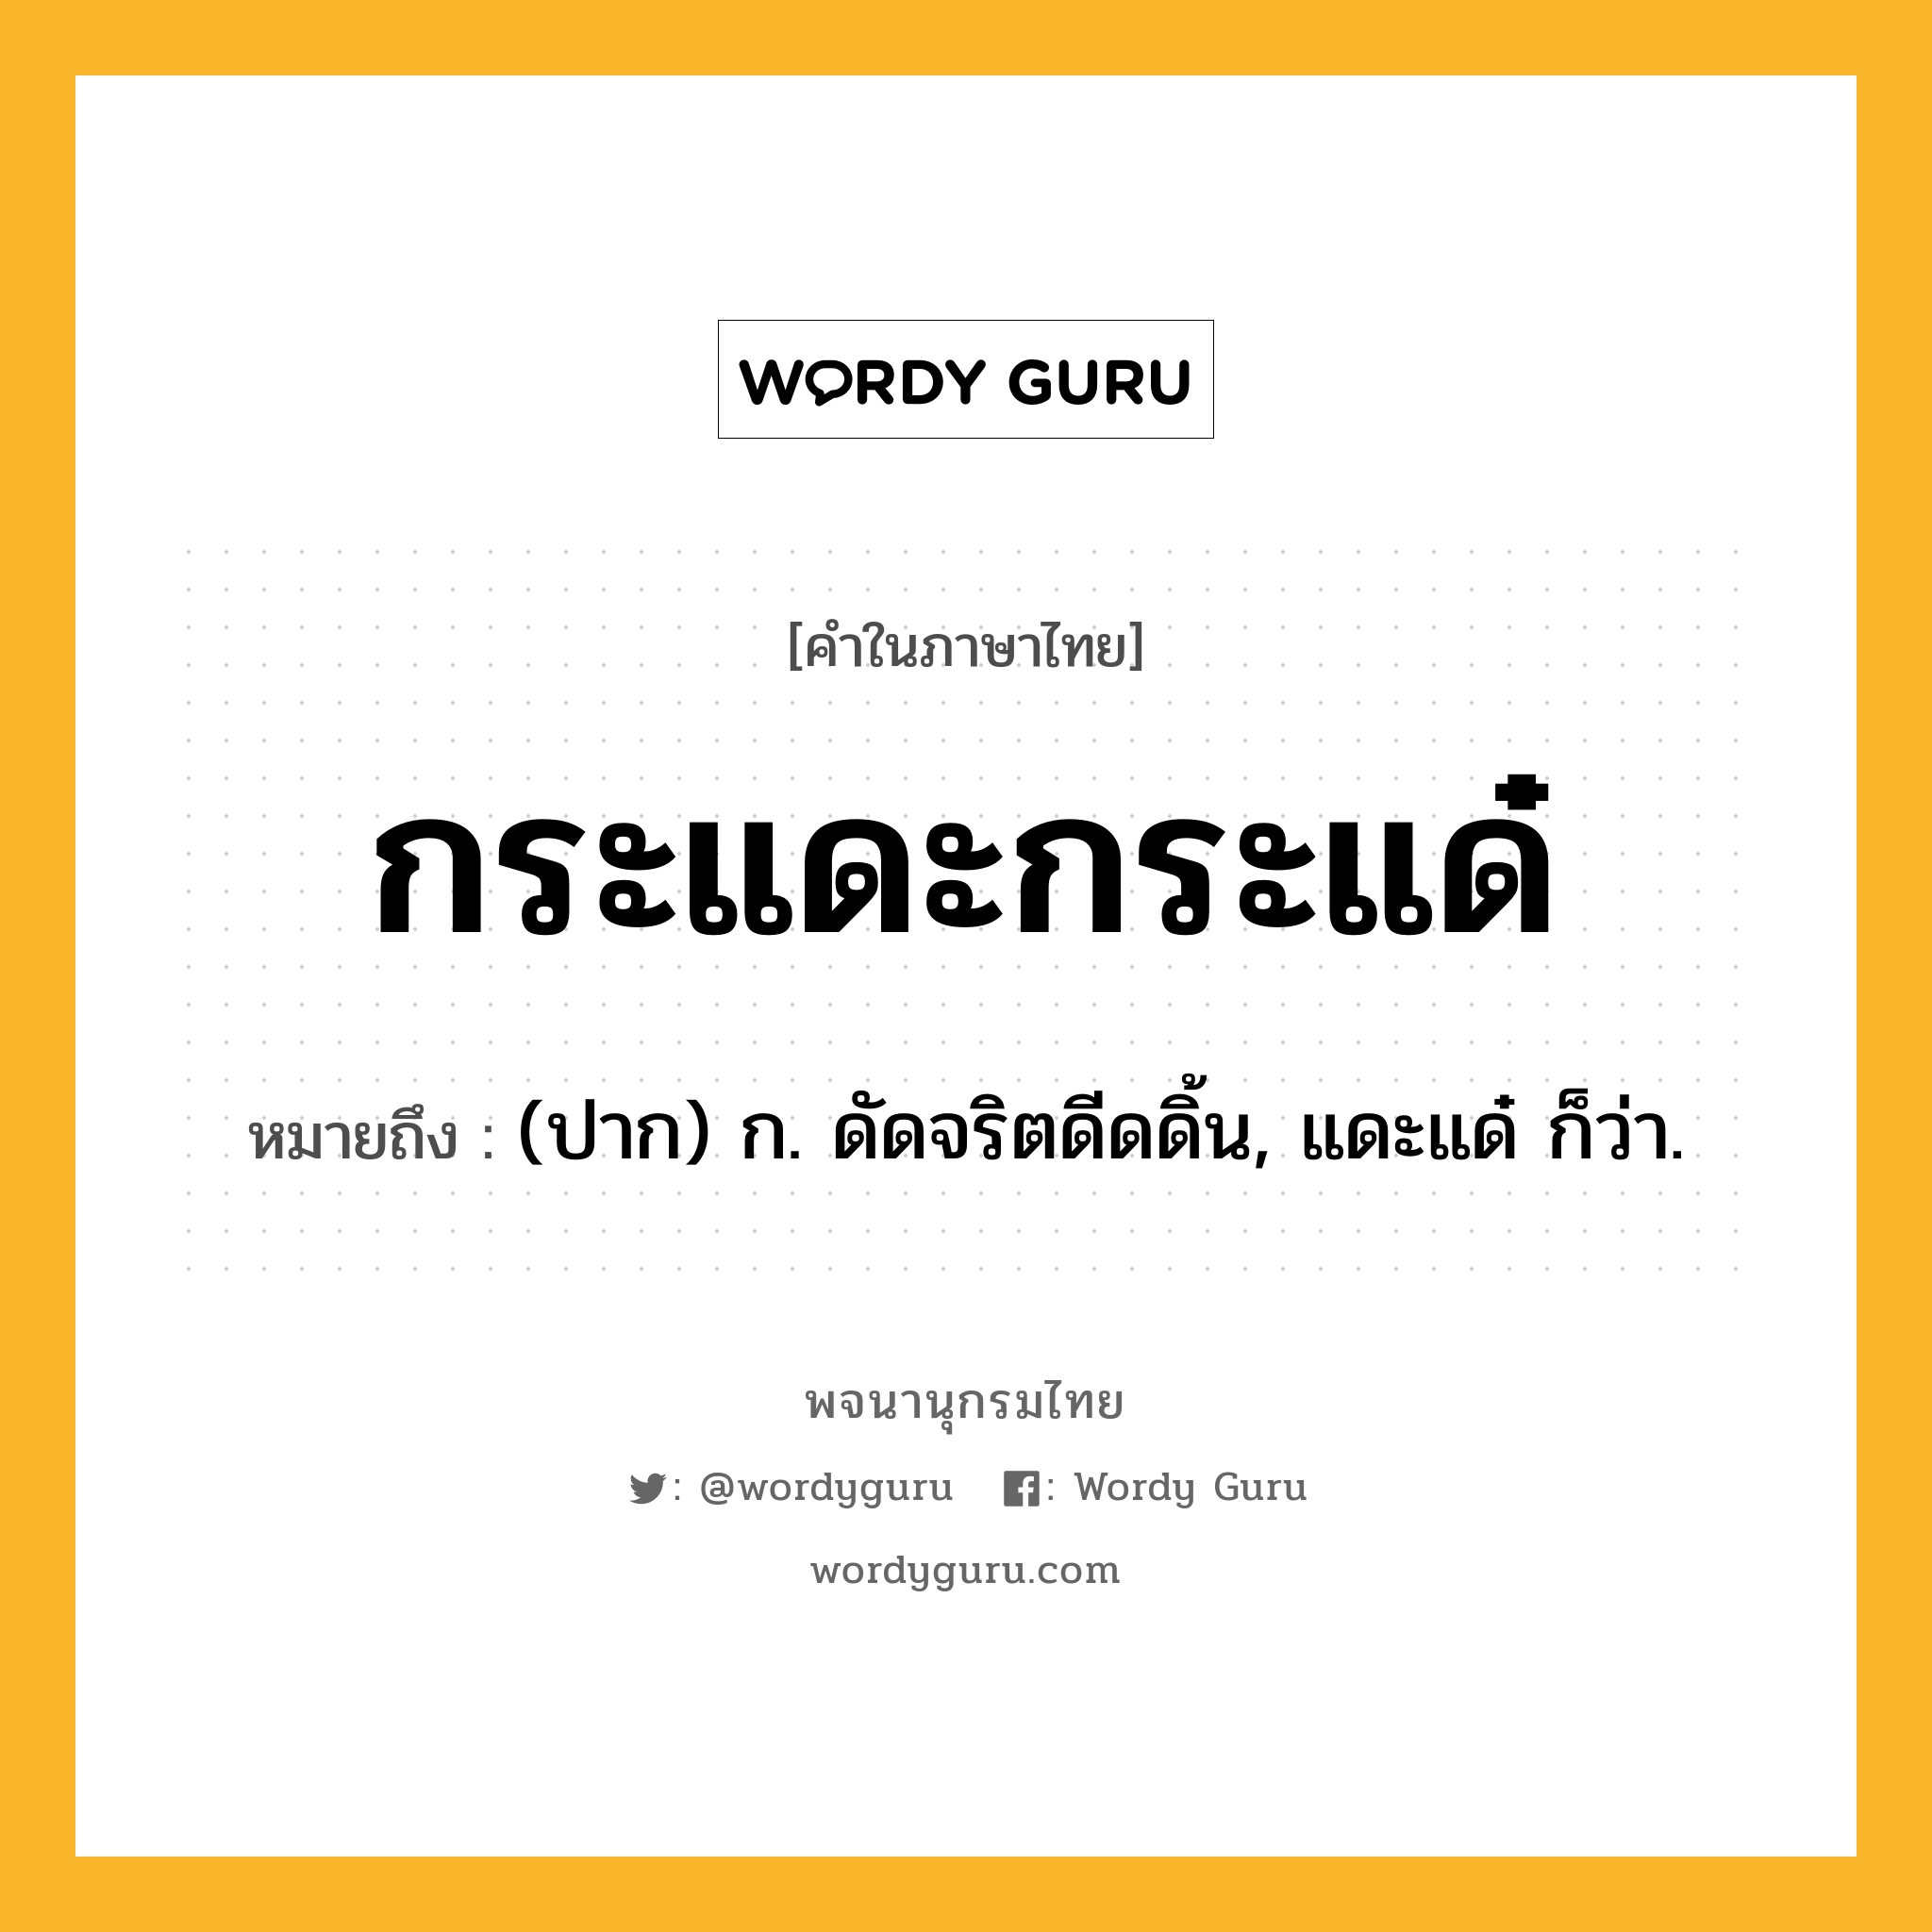 กระแดะกระแด๋ ความหมาย หมายถึงอะไร?, คำในภาษาไทย กระแดะกระแด๋ หมายถึง (ปาก) ก. ดัดจริตดีดดิ้น, แดะแด๋ ก็ว่า.